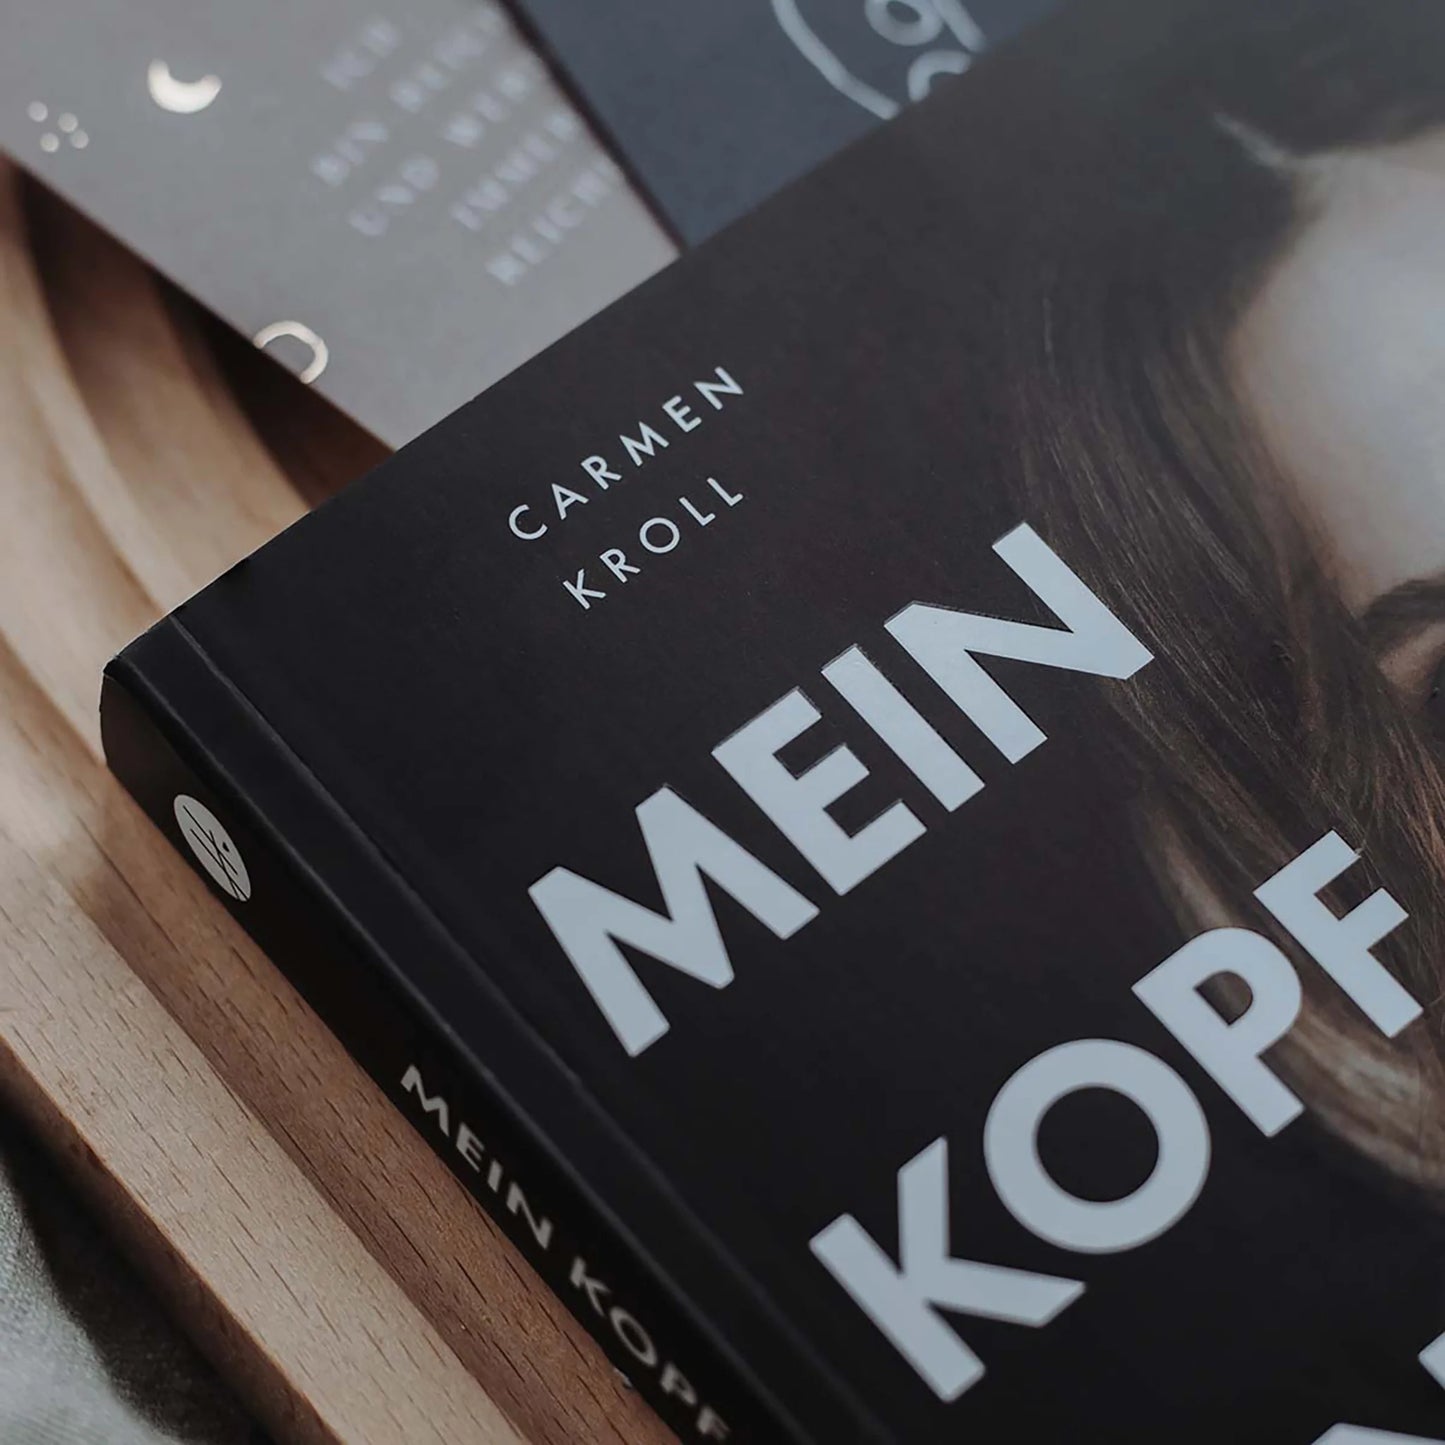 Autobiografie "Mein Kopf, ein Universum" von Carmen Kroll